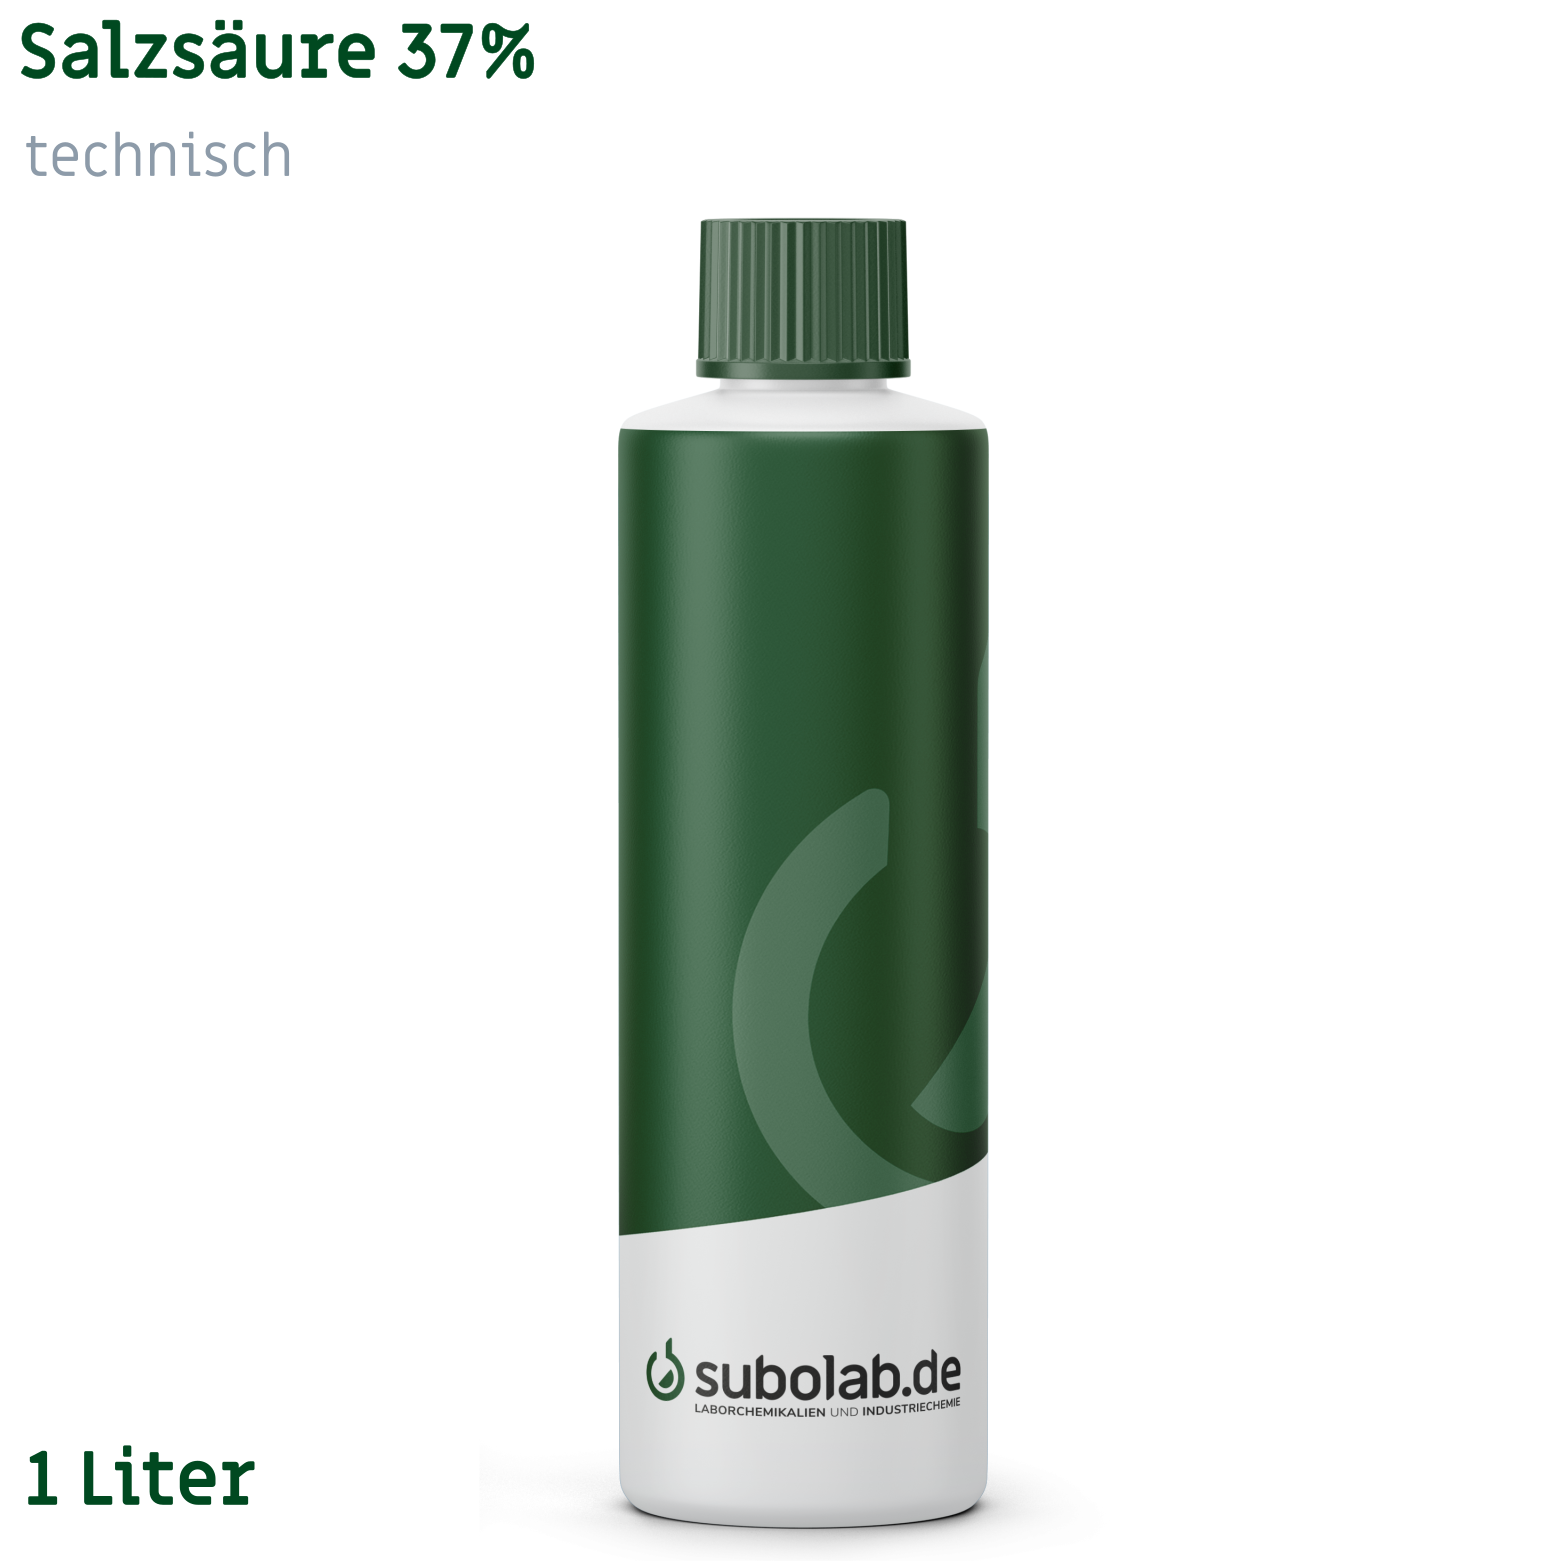 Bild von Salzsäure 37% technisch (1 Liter)